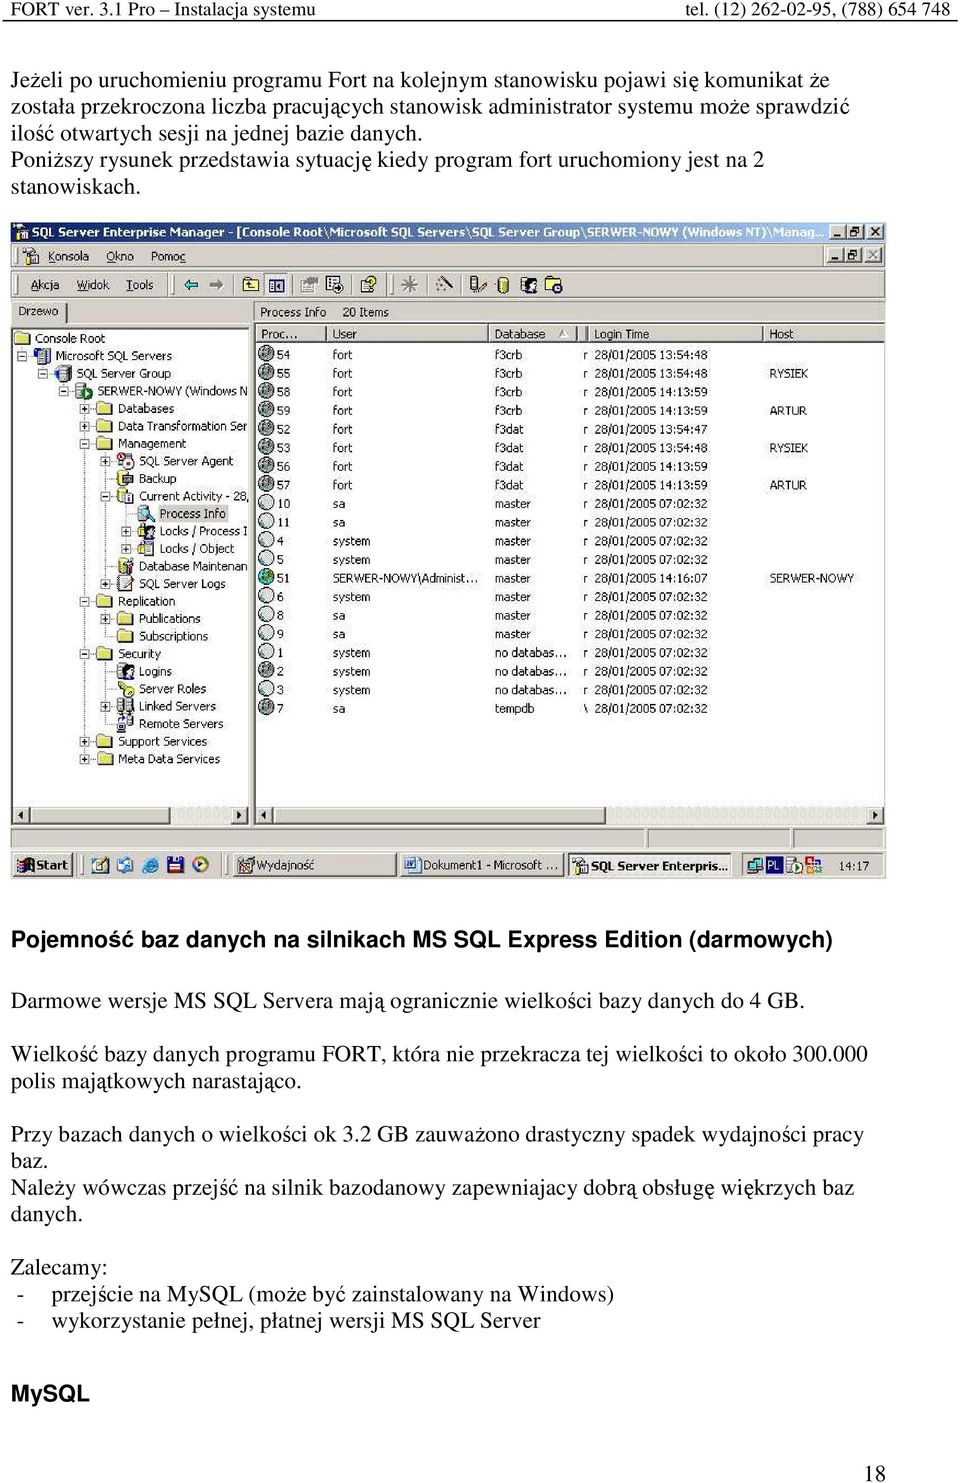 Pojemność baz danych na silnikach MS SQL Express Edition (darmowych) Darmowe wersje MS SQL Servera mają ogranicznie wielkości bazy danych do 4 GB.